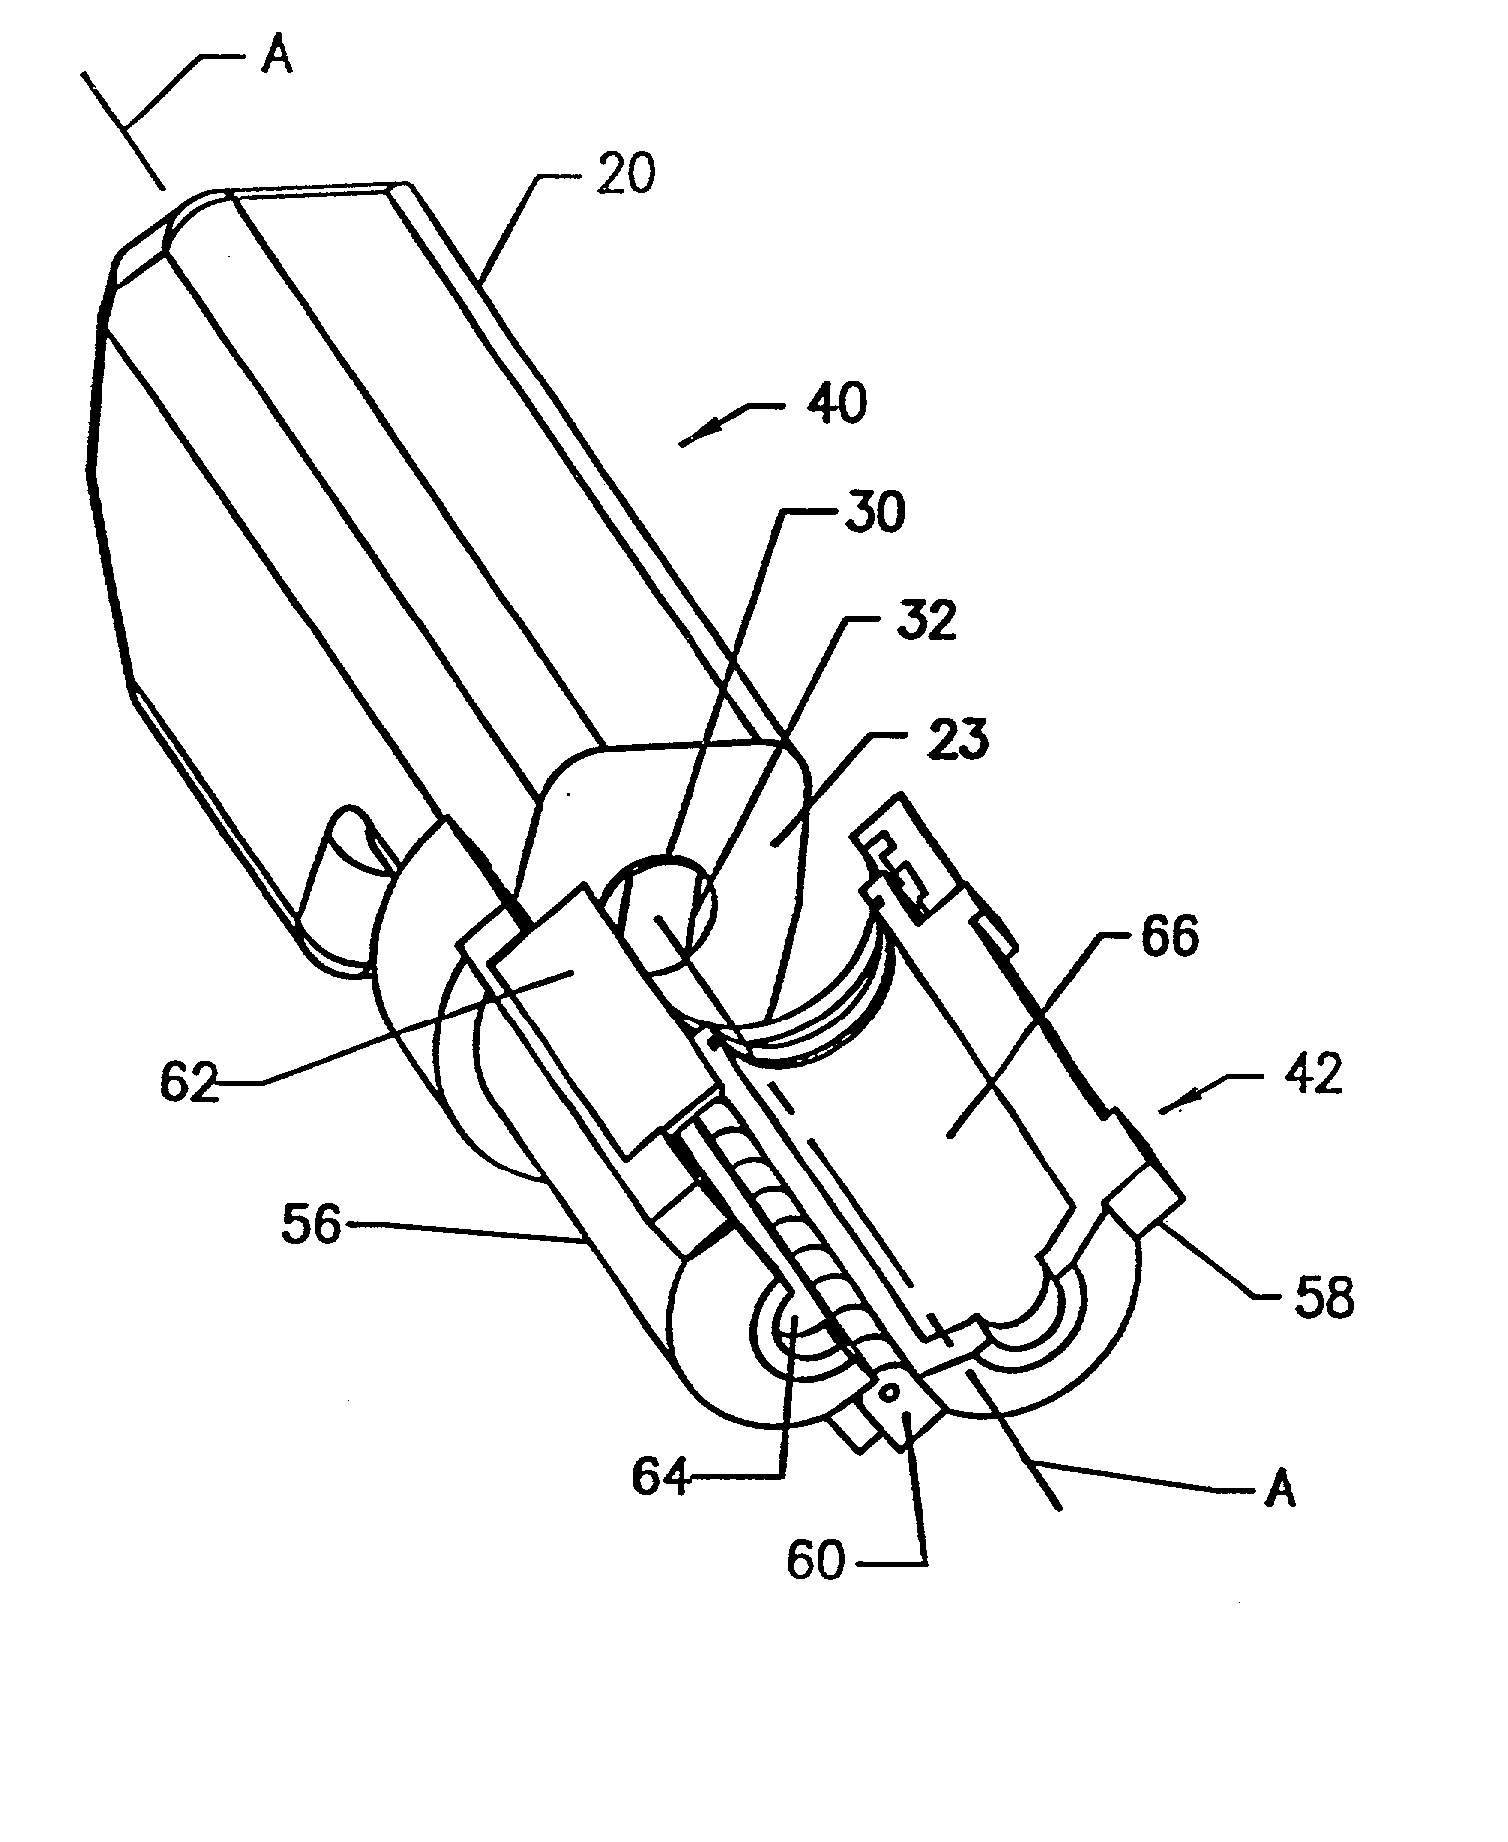 Front load pressure jacket system with syringe holder